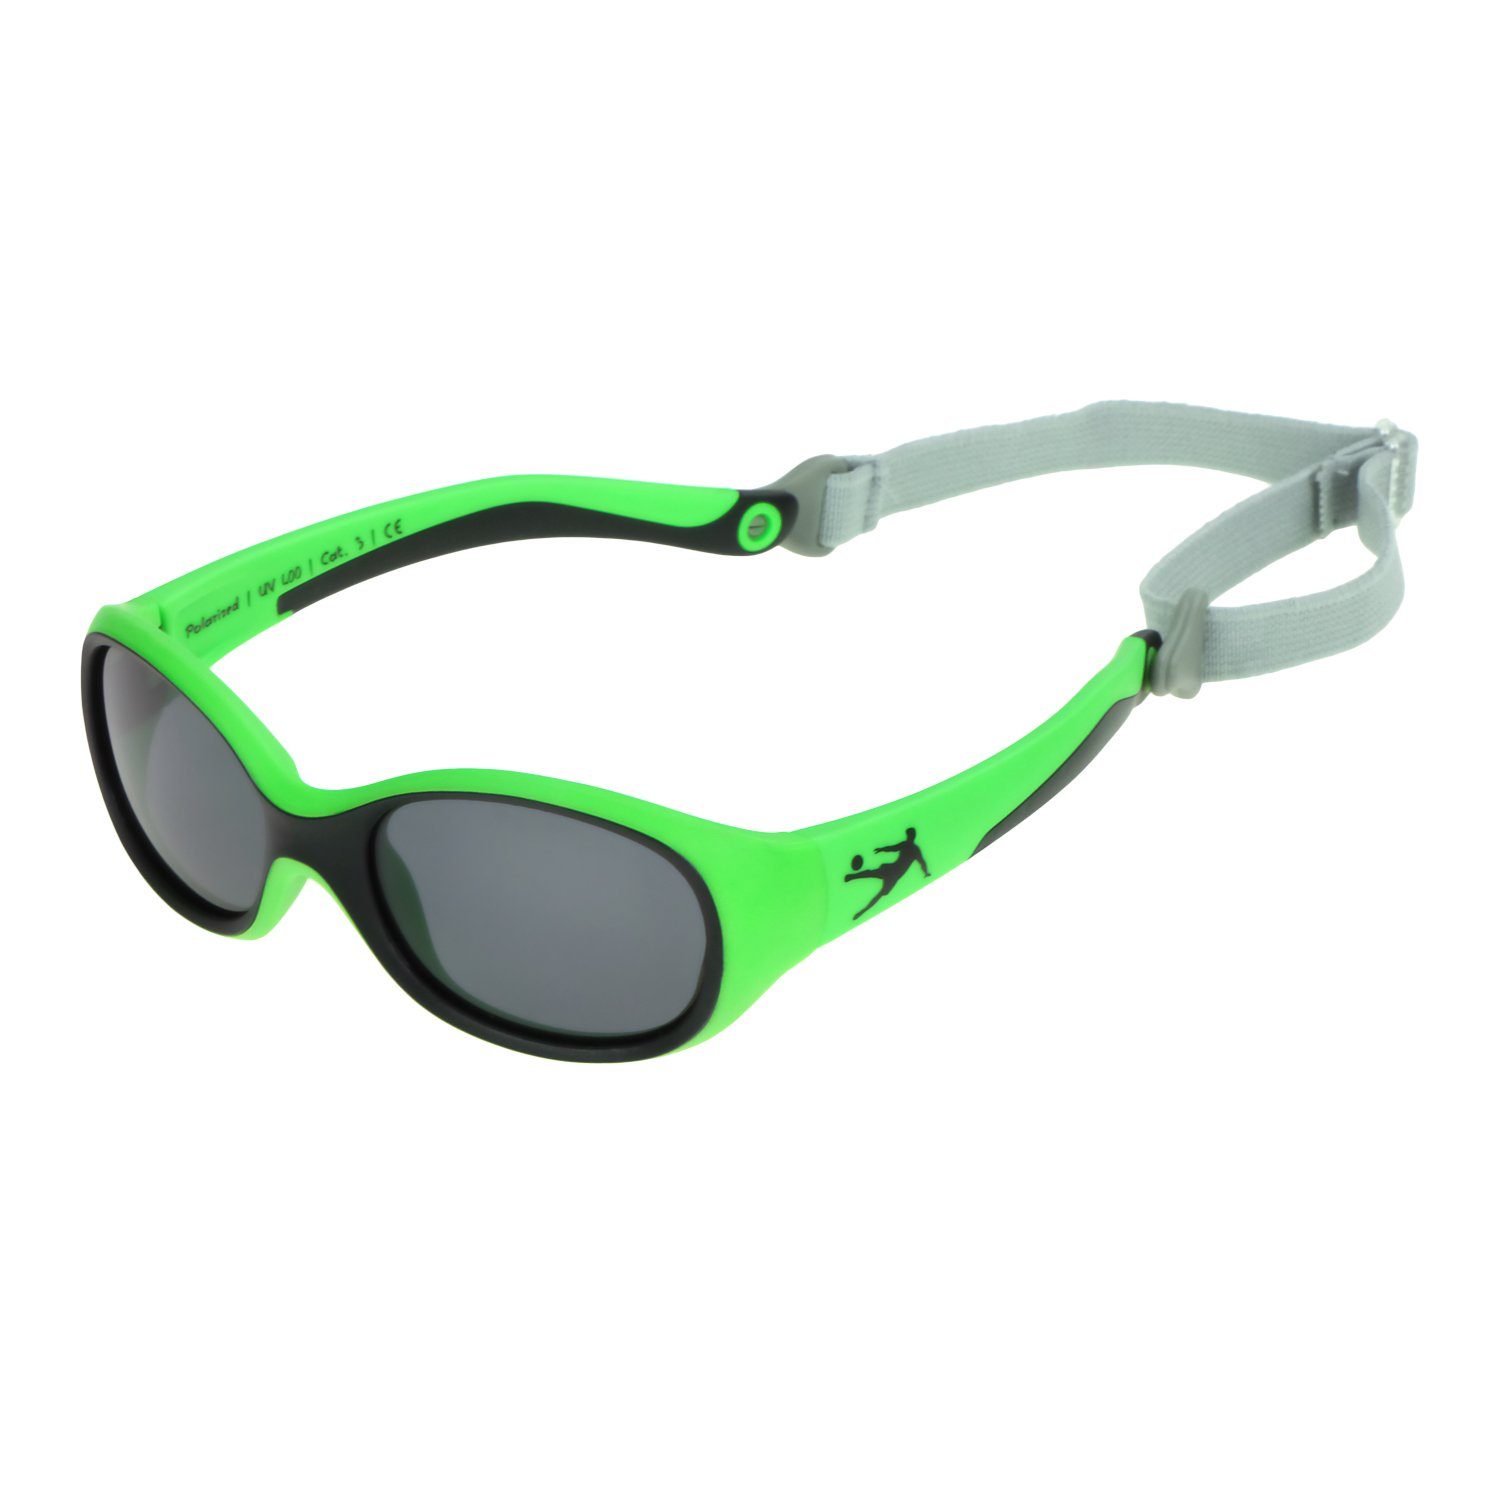 ActiveSol SUNGLASSES Sonnenbrille Kinder Sonnenbrille Kids, 2-6 Jahre, UV-Schutz, polarisiert Flexibel & Unzerstörbar, Lotuseffekt